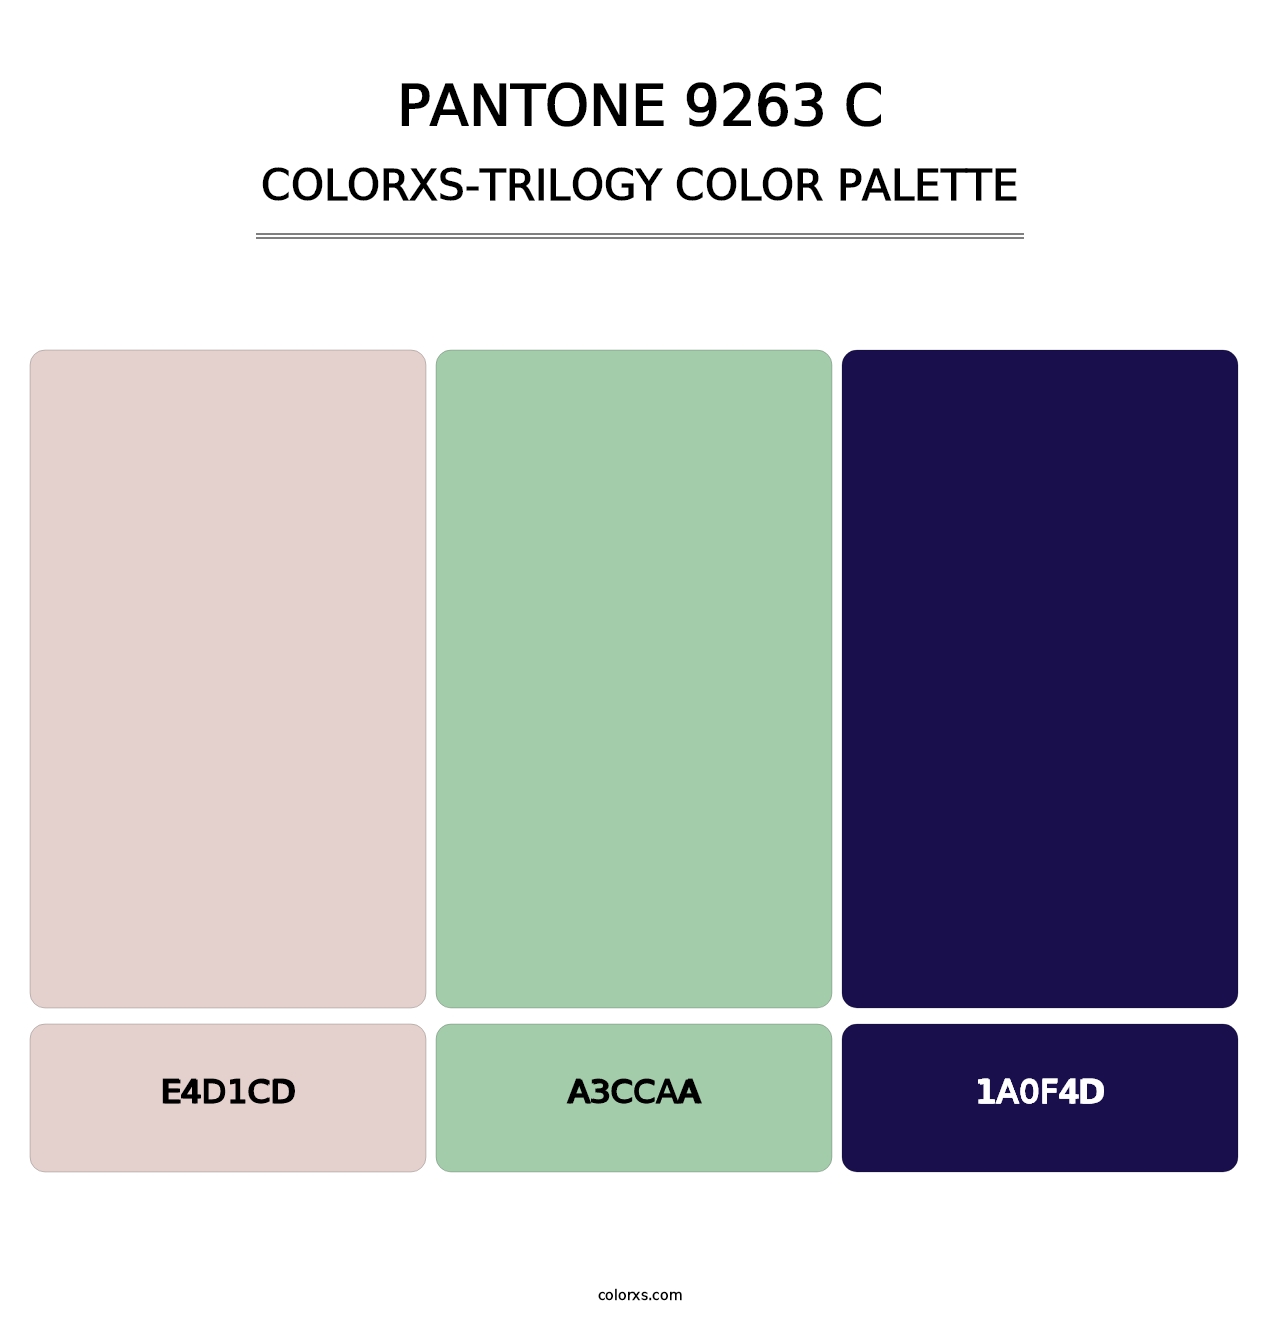 PANTONE 9263 C - Colorxs Trilogy Palette